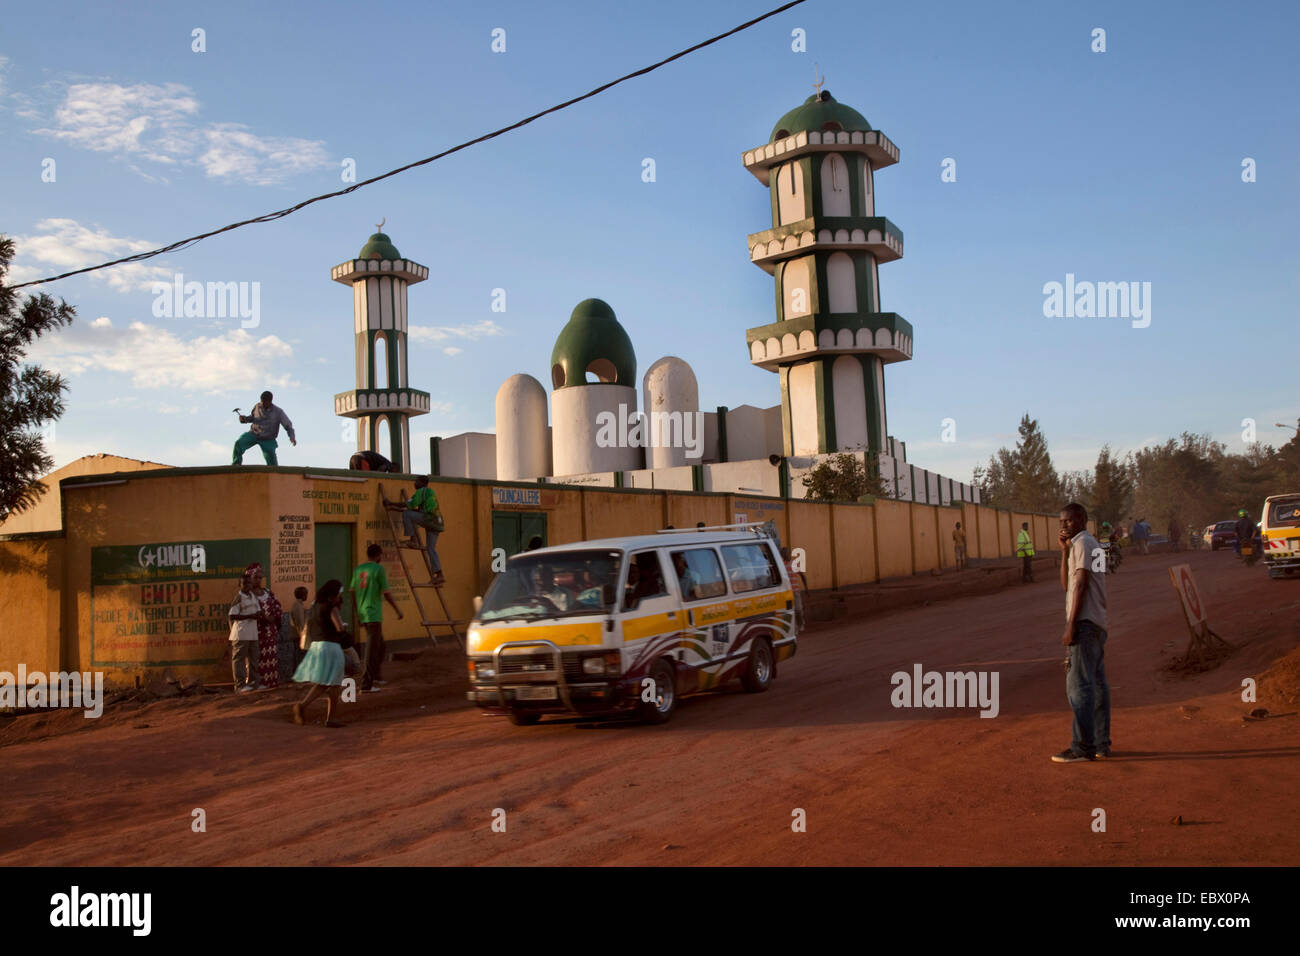 Mosquée (la) bigges de Nyamirambo, une zone de Kigali où un plus grand nombre de musulmans vivent, des travaux de réparation sont en cours sur le mur, au Rwanda, Kigali, Nyamirambo Banque D'Images